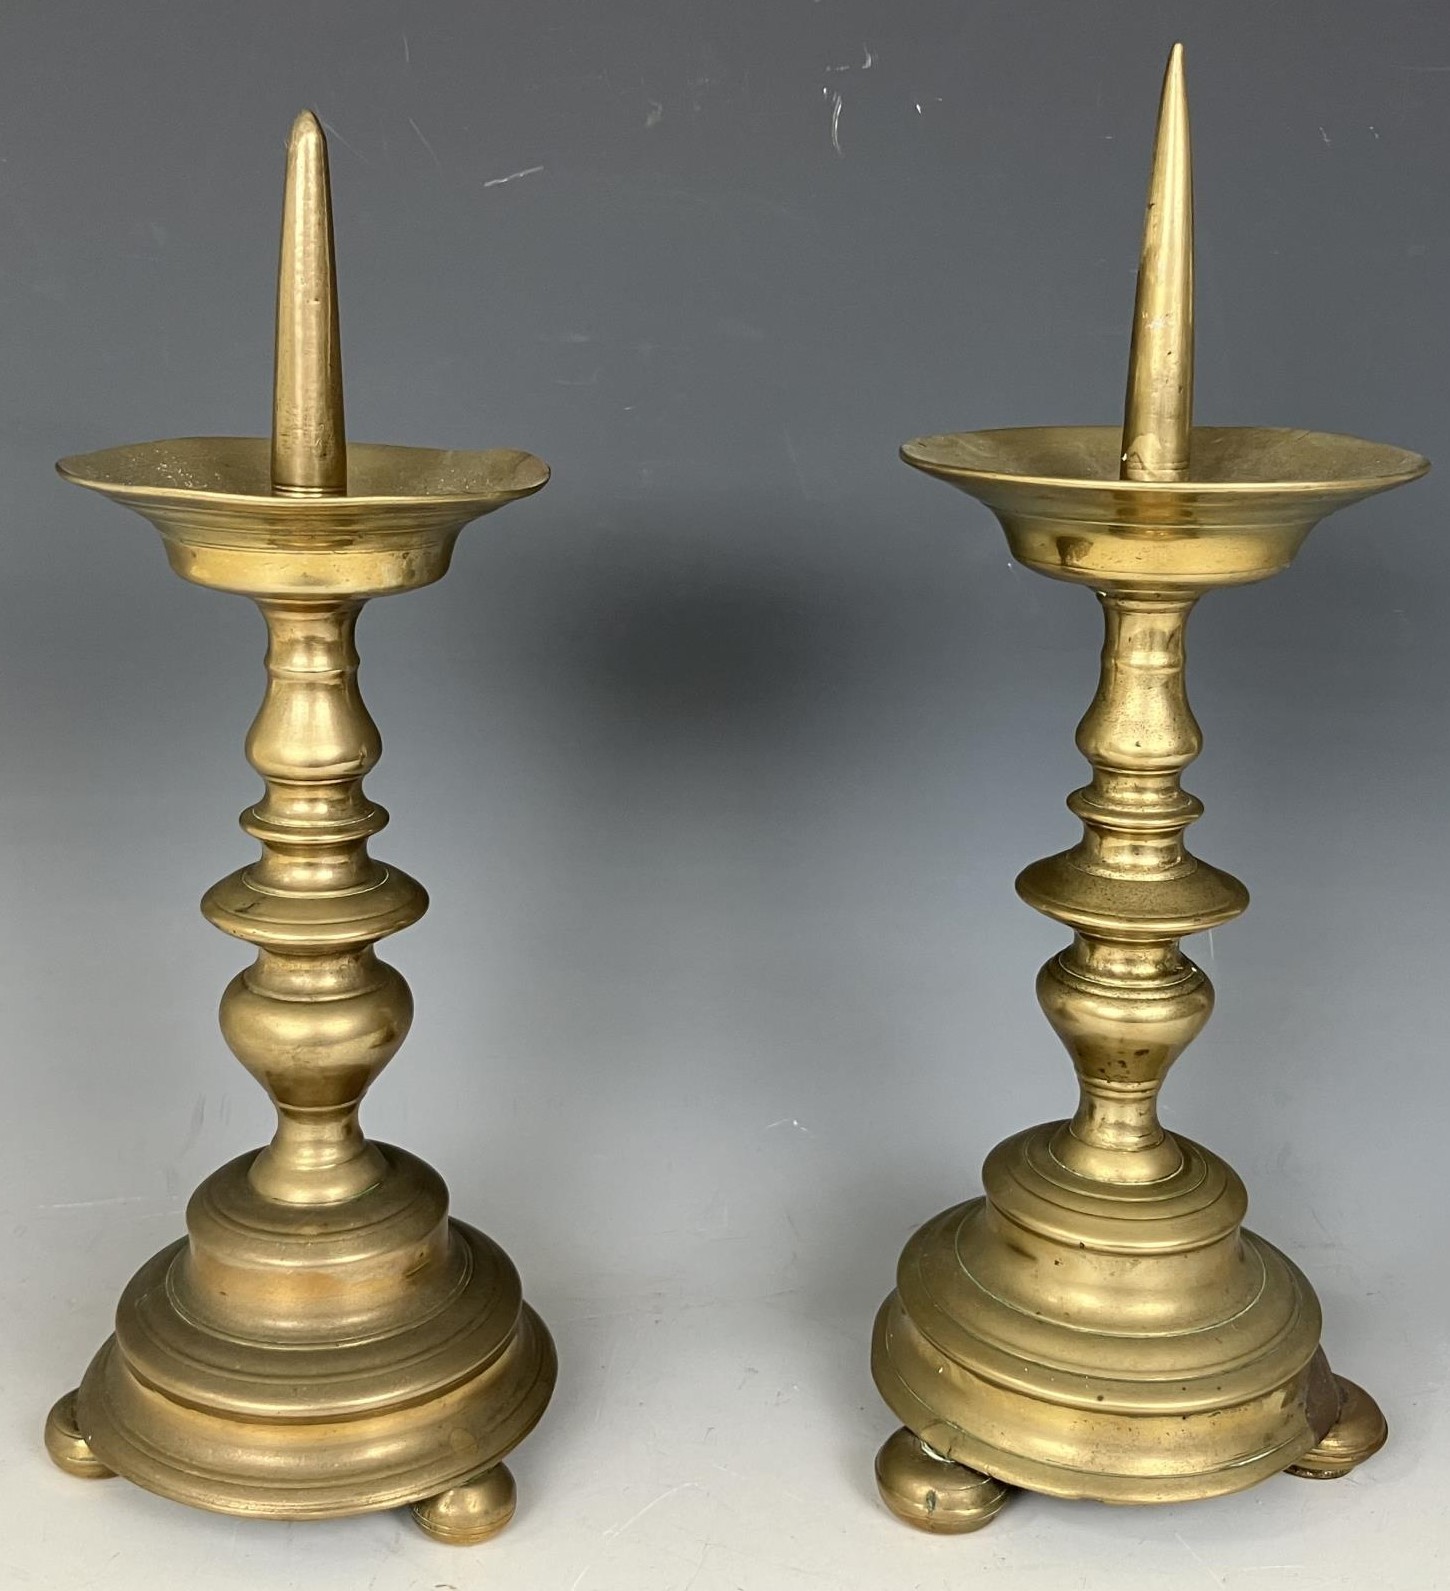 A pair of brass picket candlesticks, 30 cm high